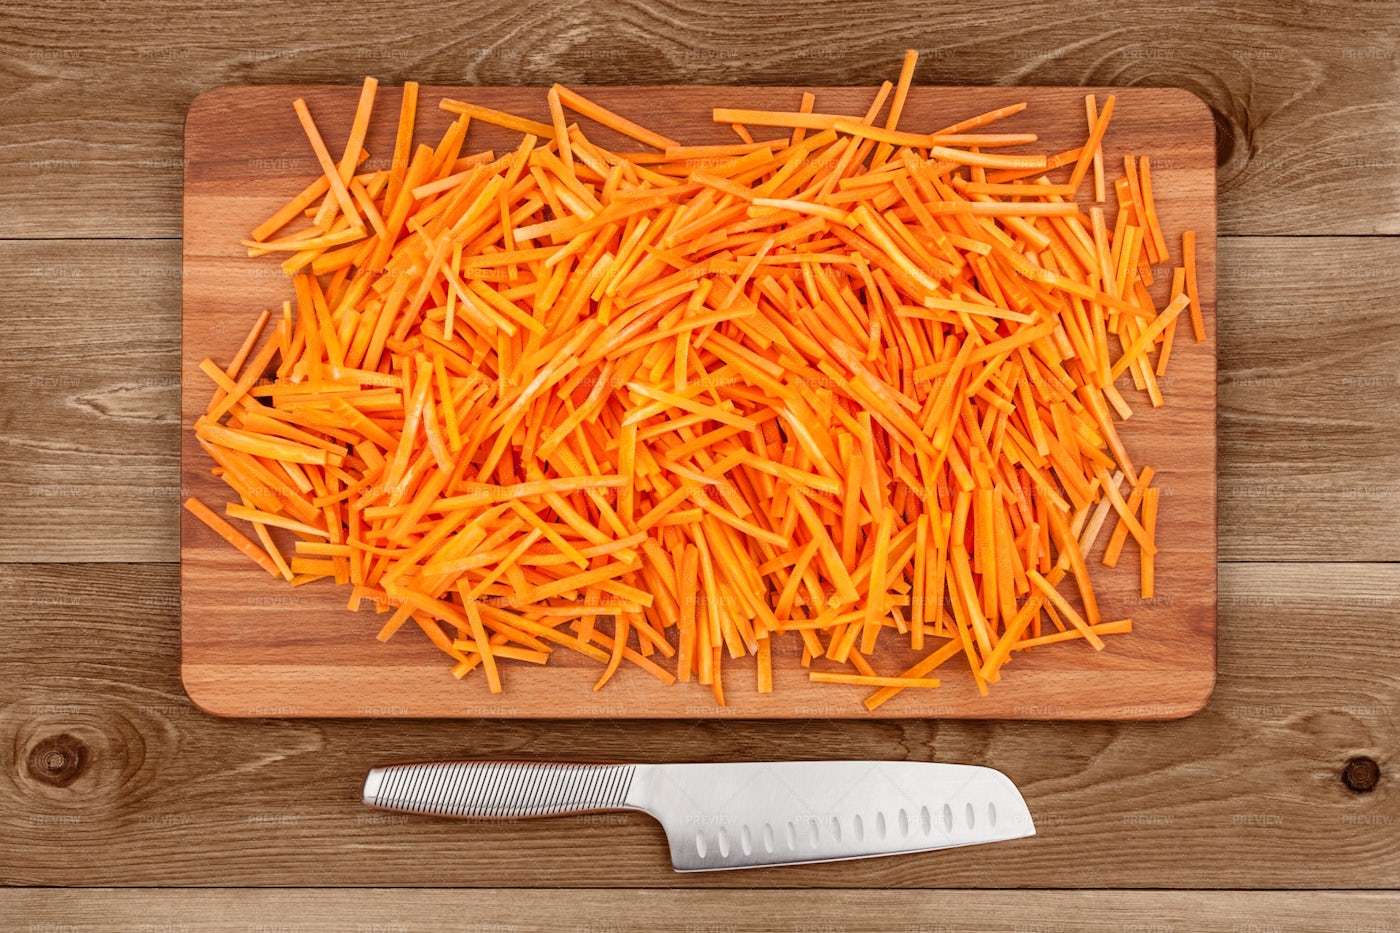 Knife And Carrot Sticks: Stock Photos